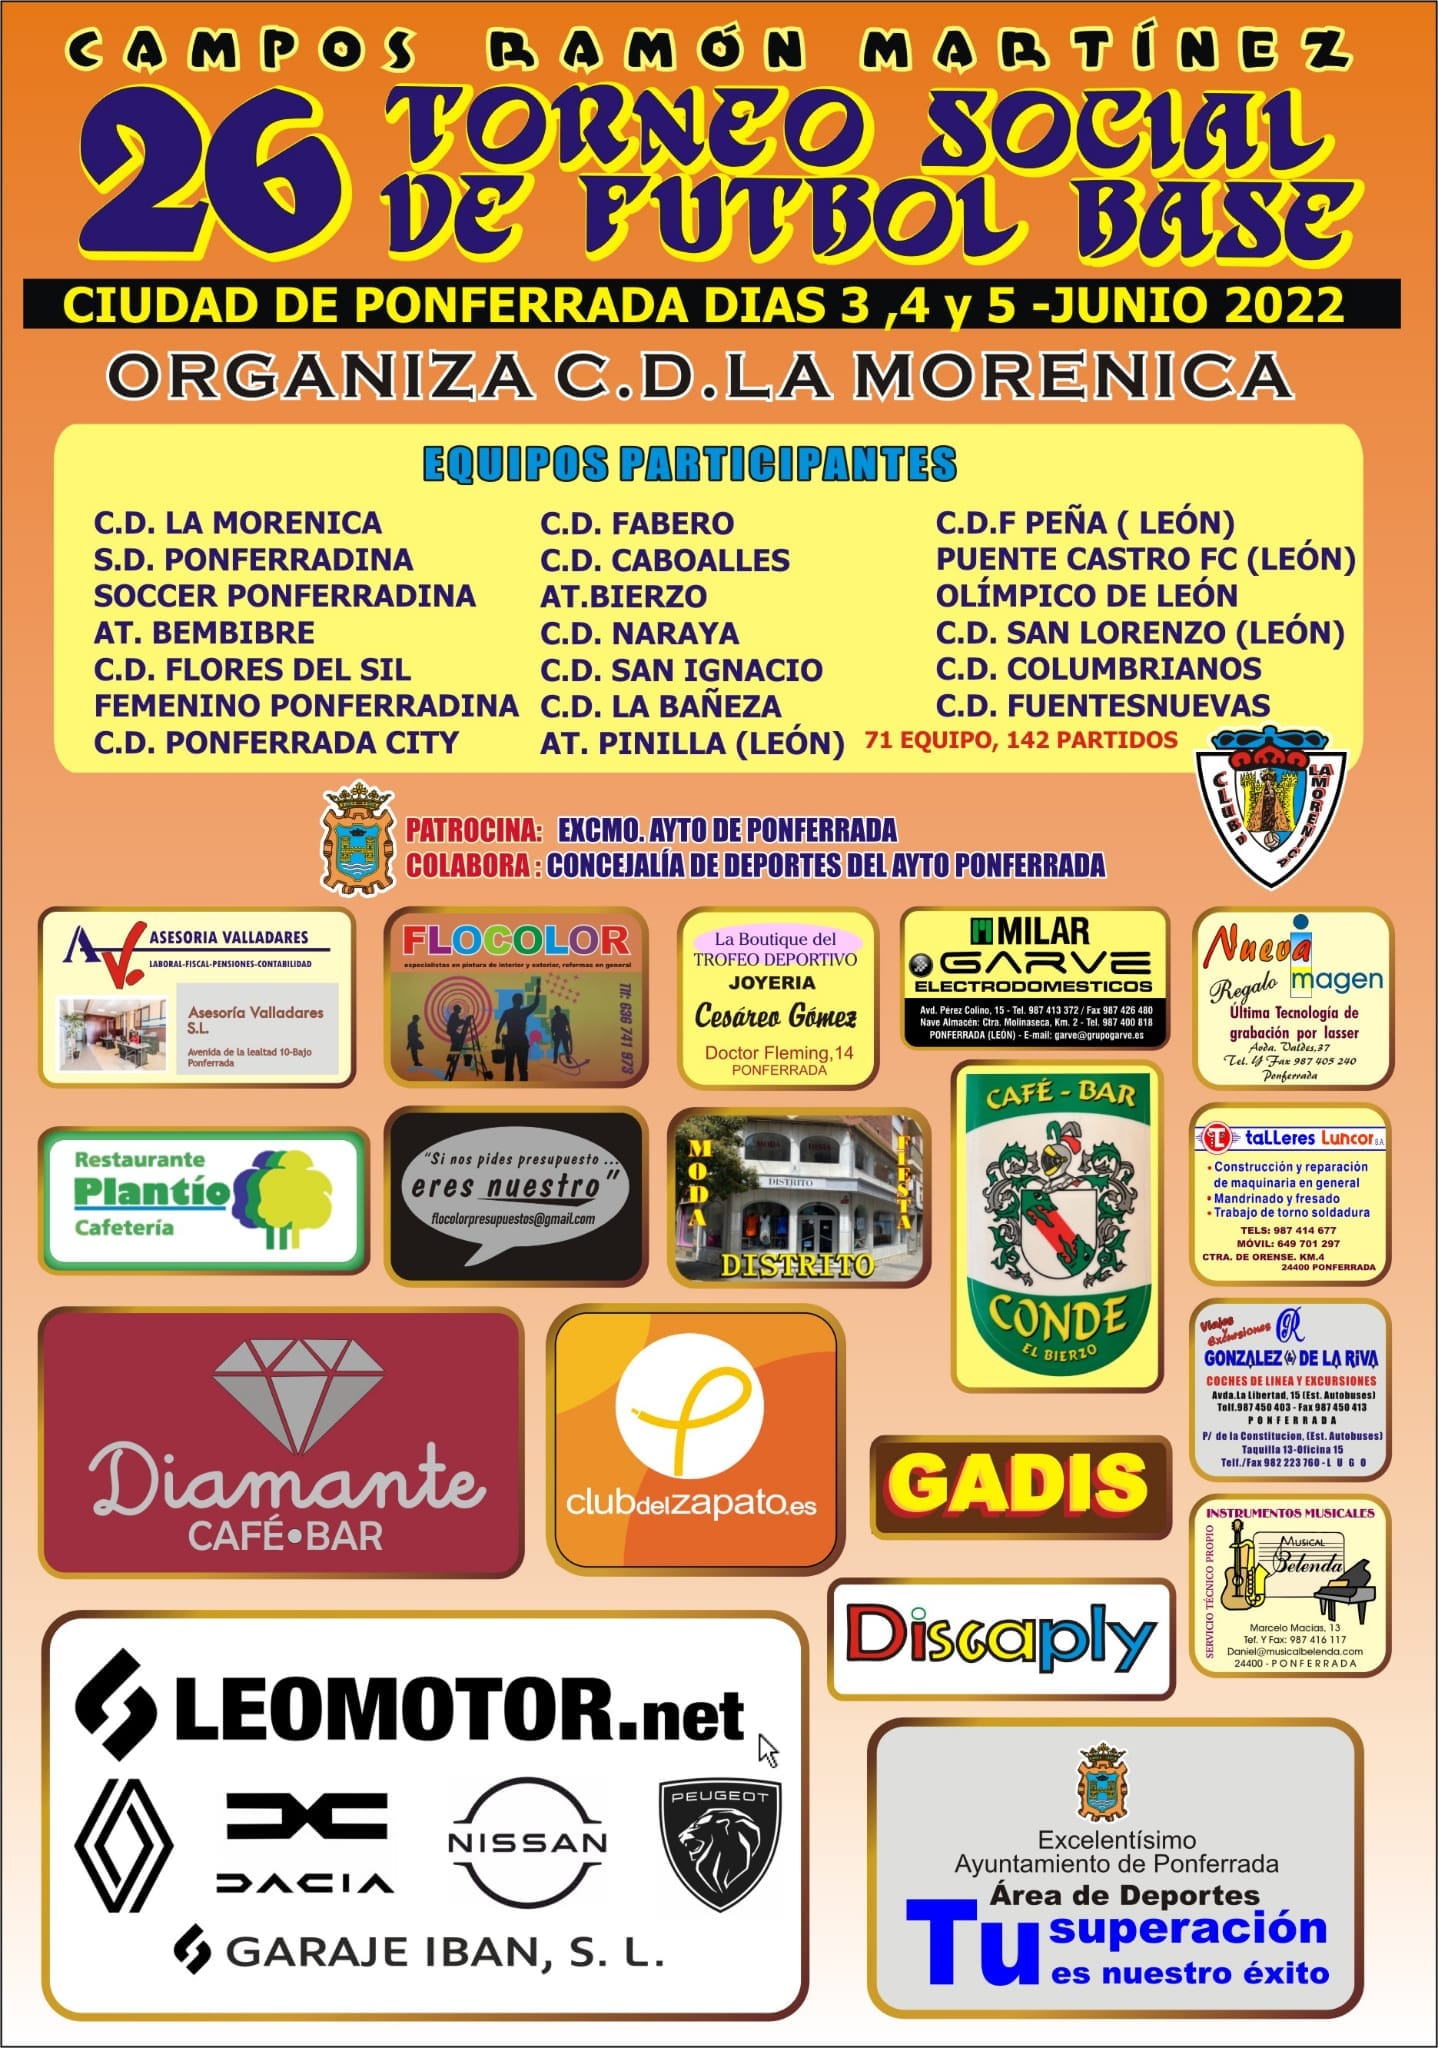 El club CD La Morenica organiza la 26 edición de su Torneo Social de Fútbol Base 2